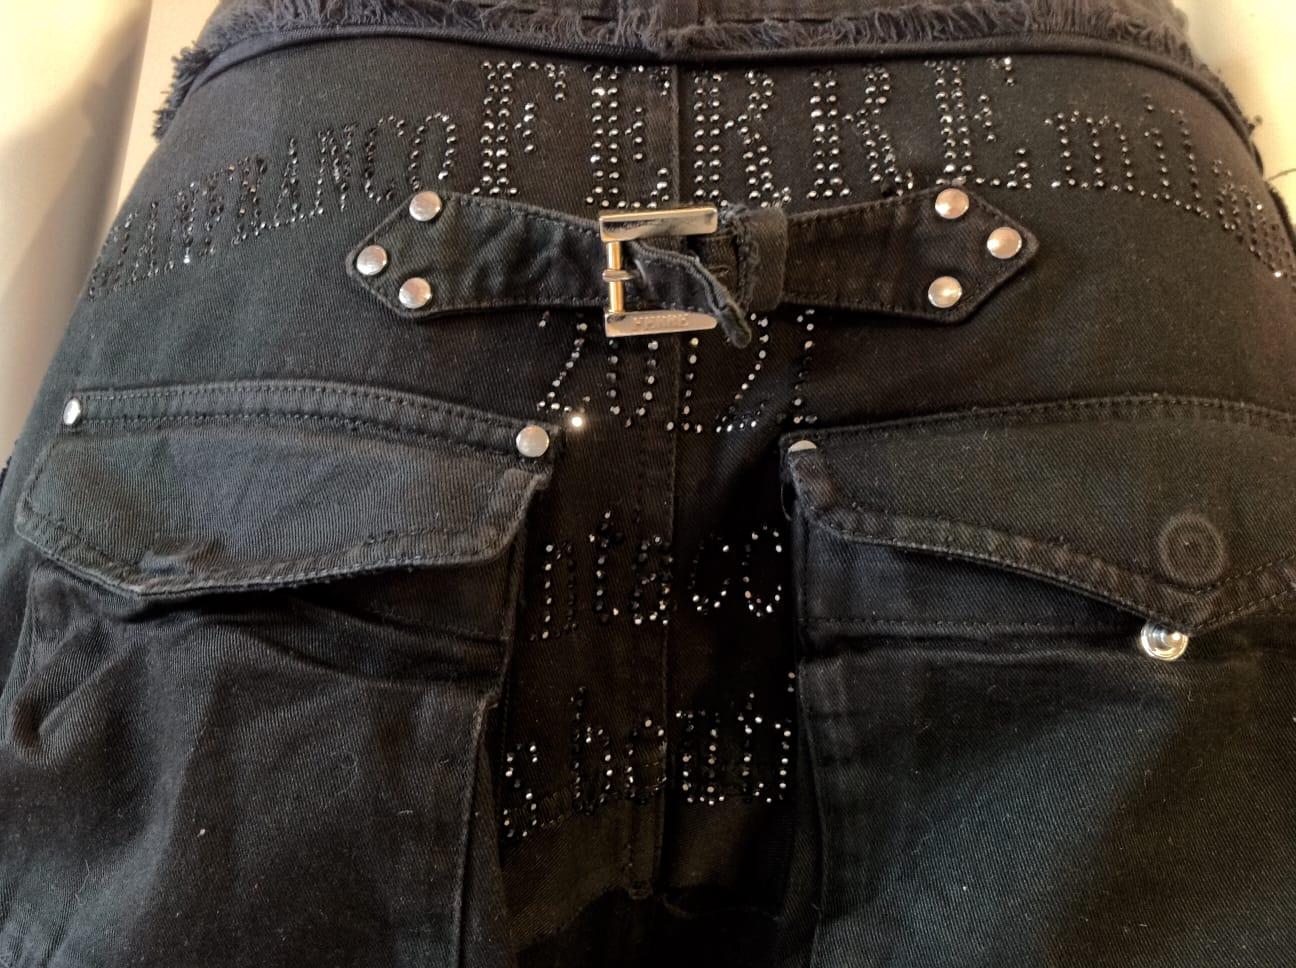 Gianfranco Ferré drop crotch black jeans, c 2010 For Sale 2